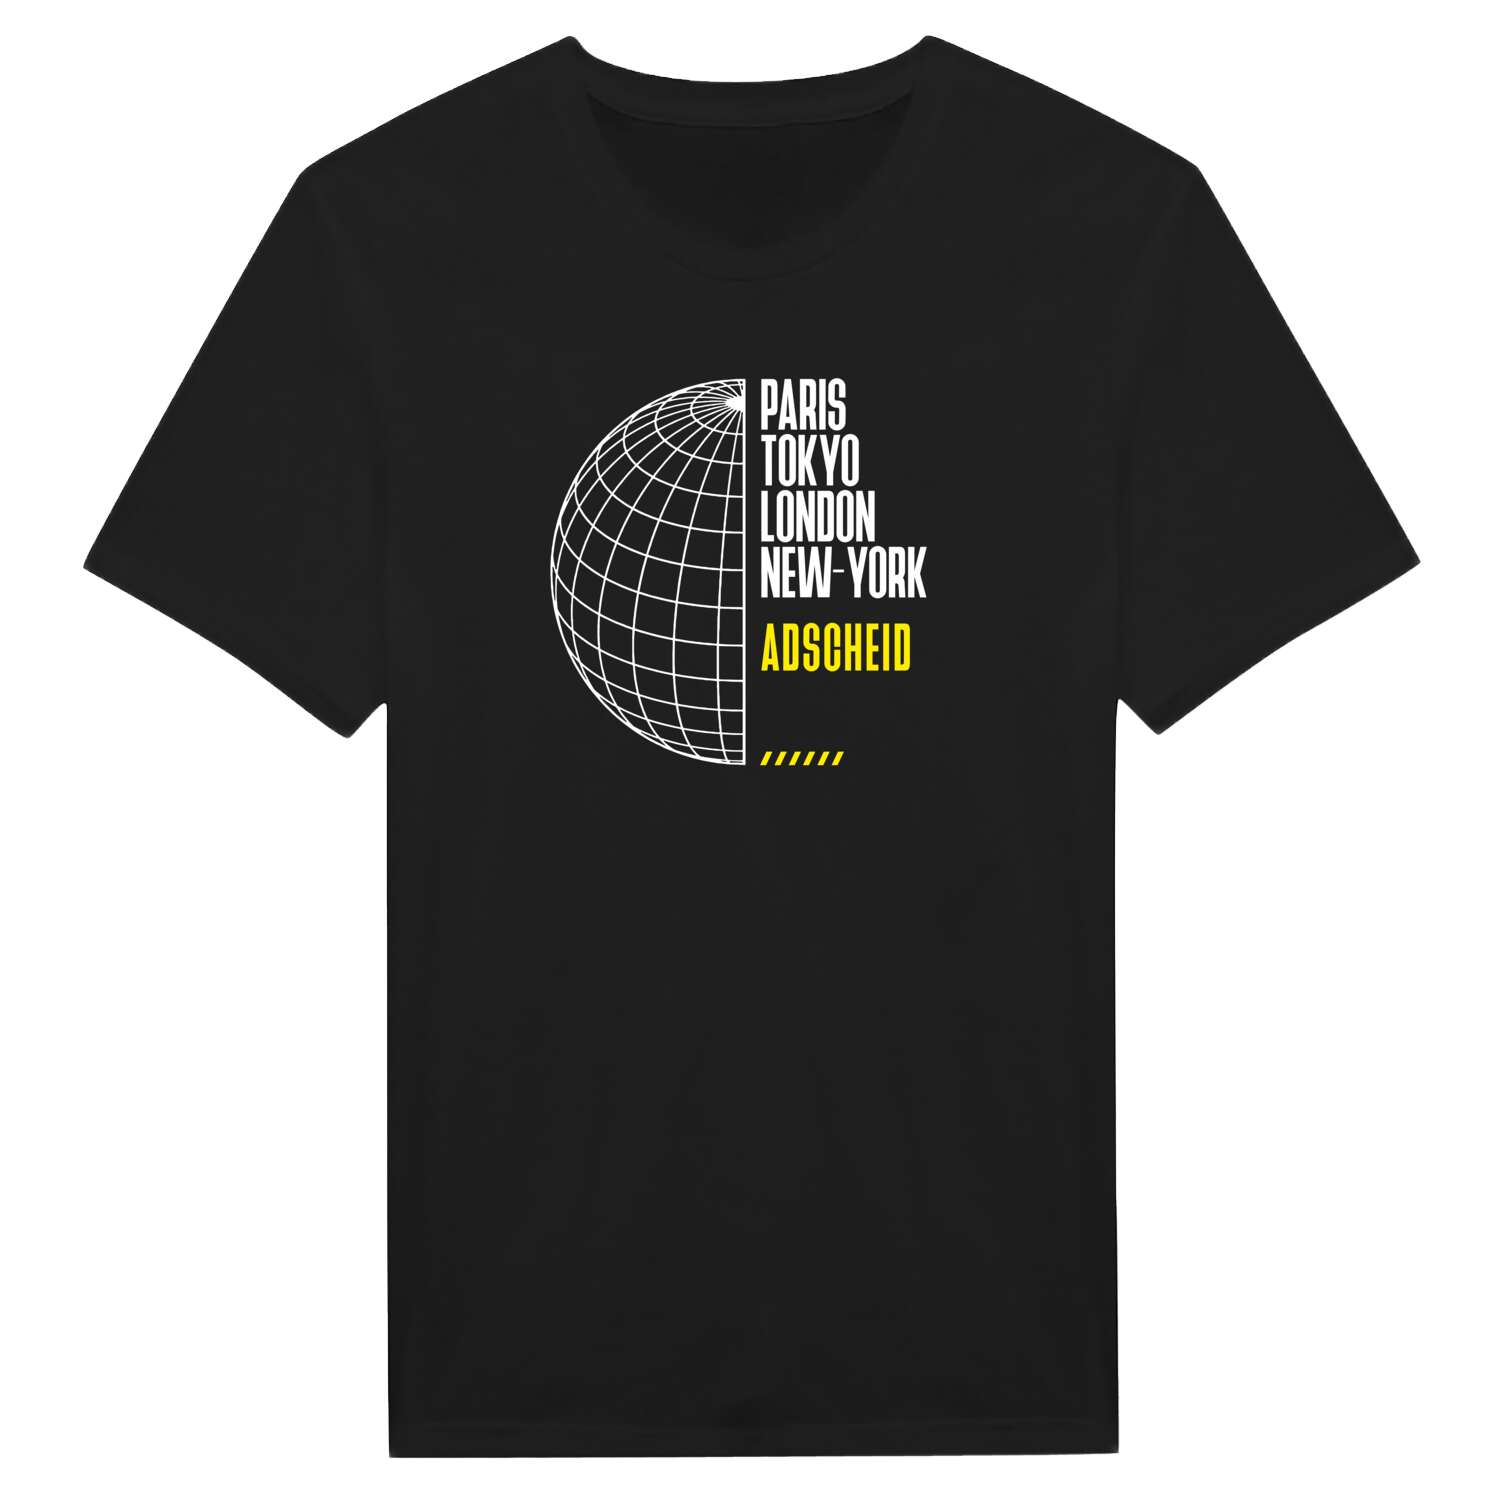 Adscheid T-Shirt »Paris Tokyo London«